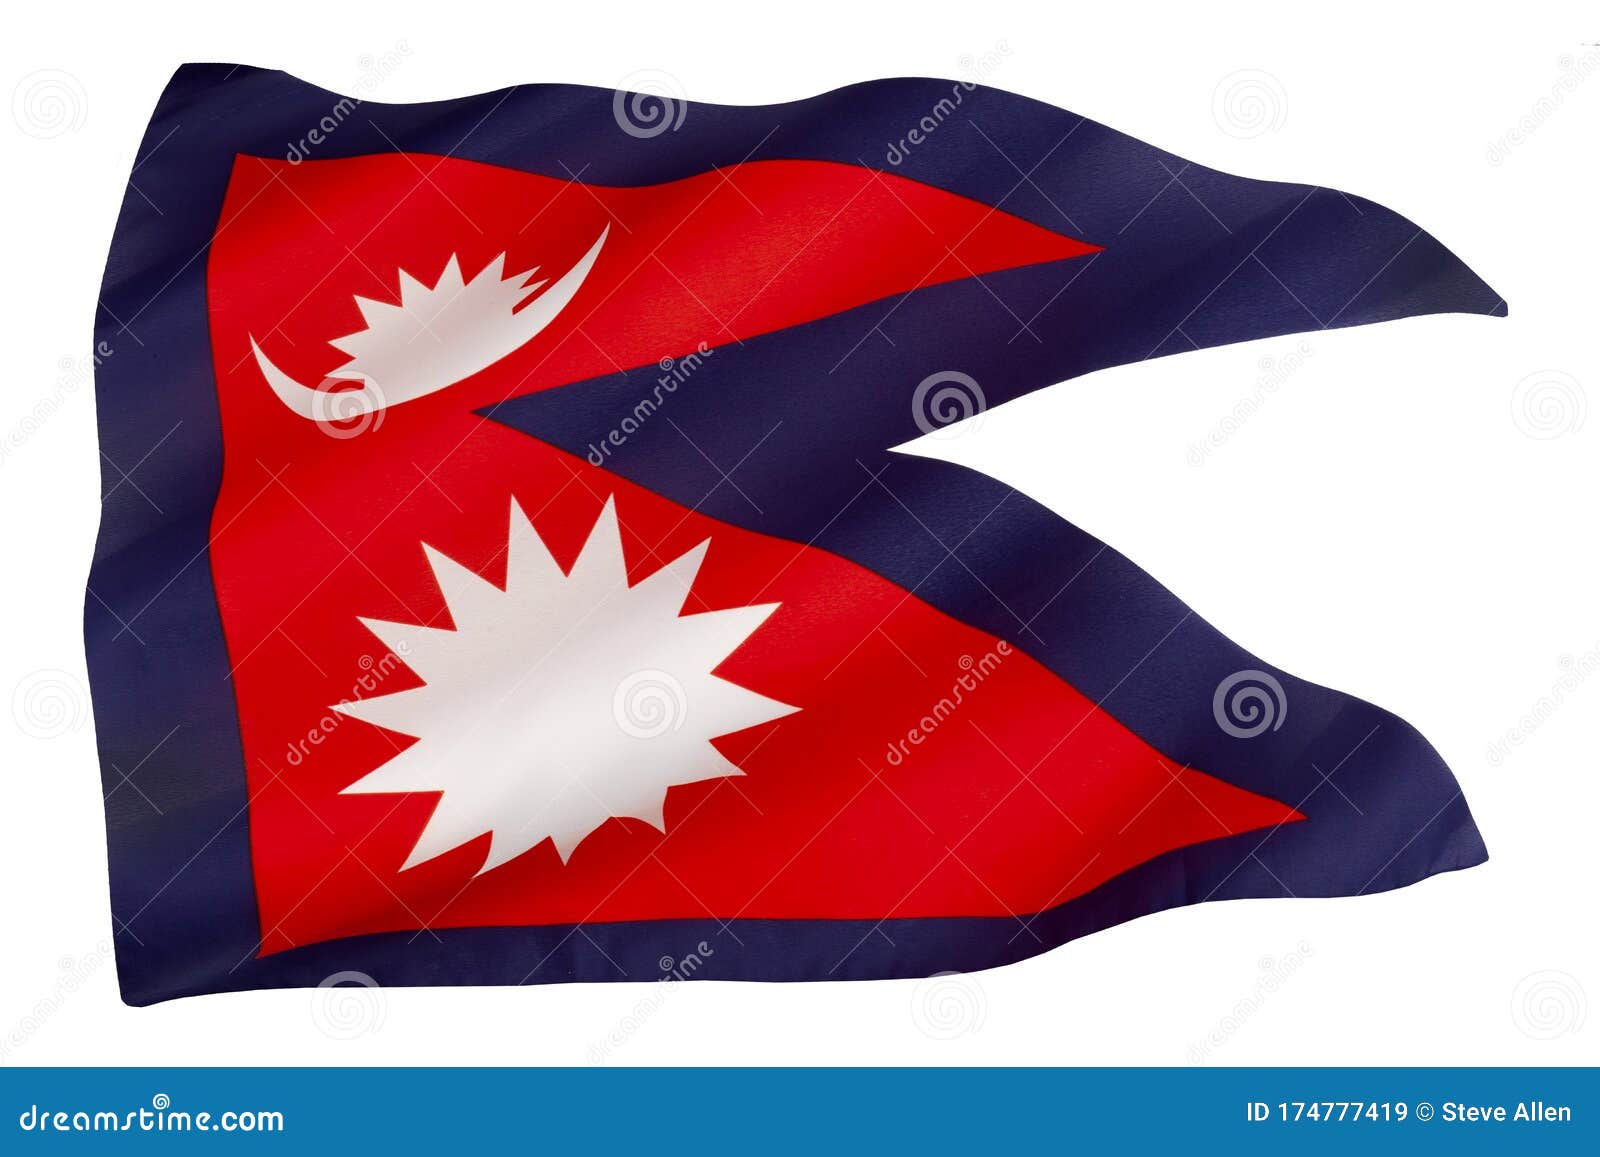 0123 Bandera de Nepal Impreso Funda rígida para diversos modelos de teléfono Gratis Llavero 